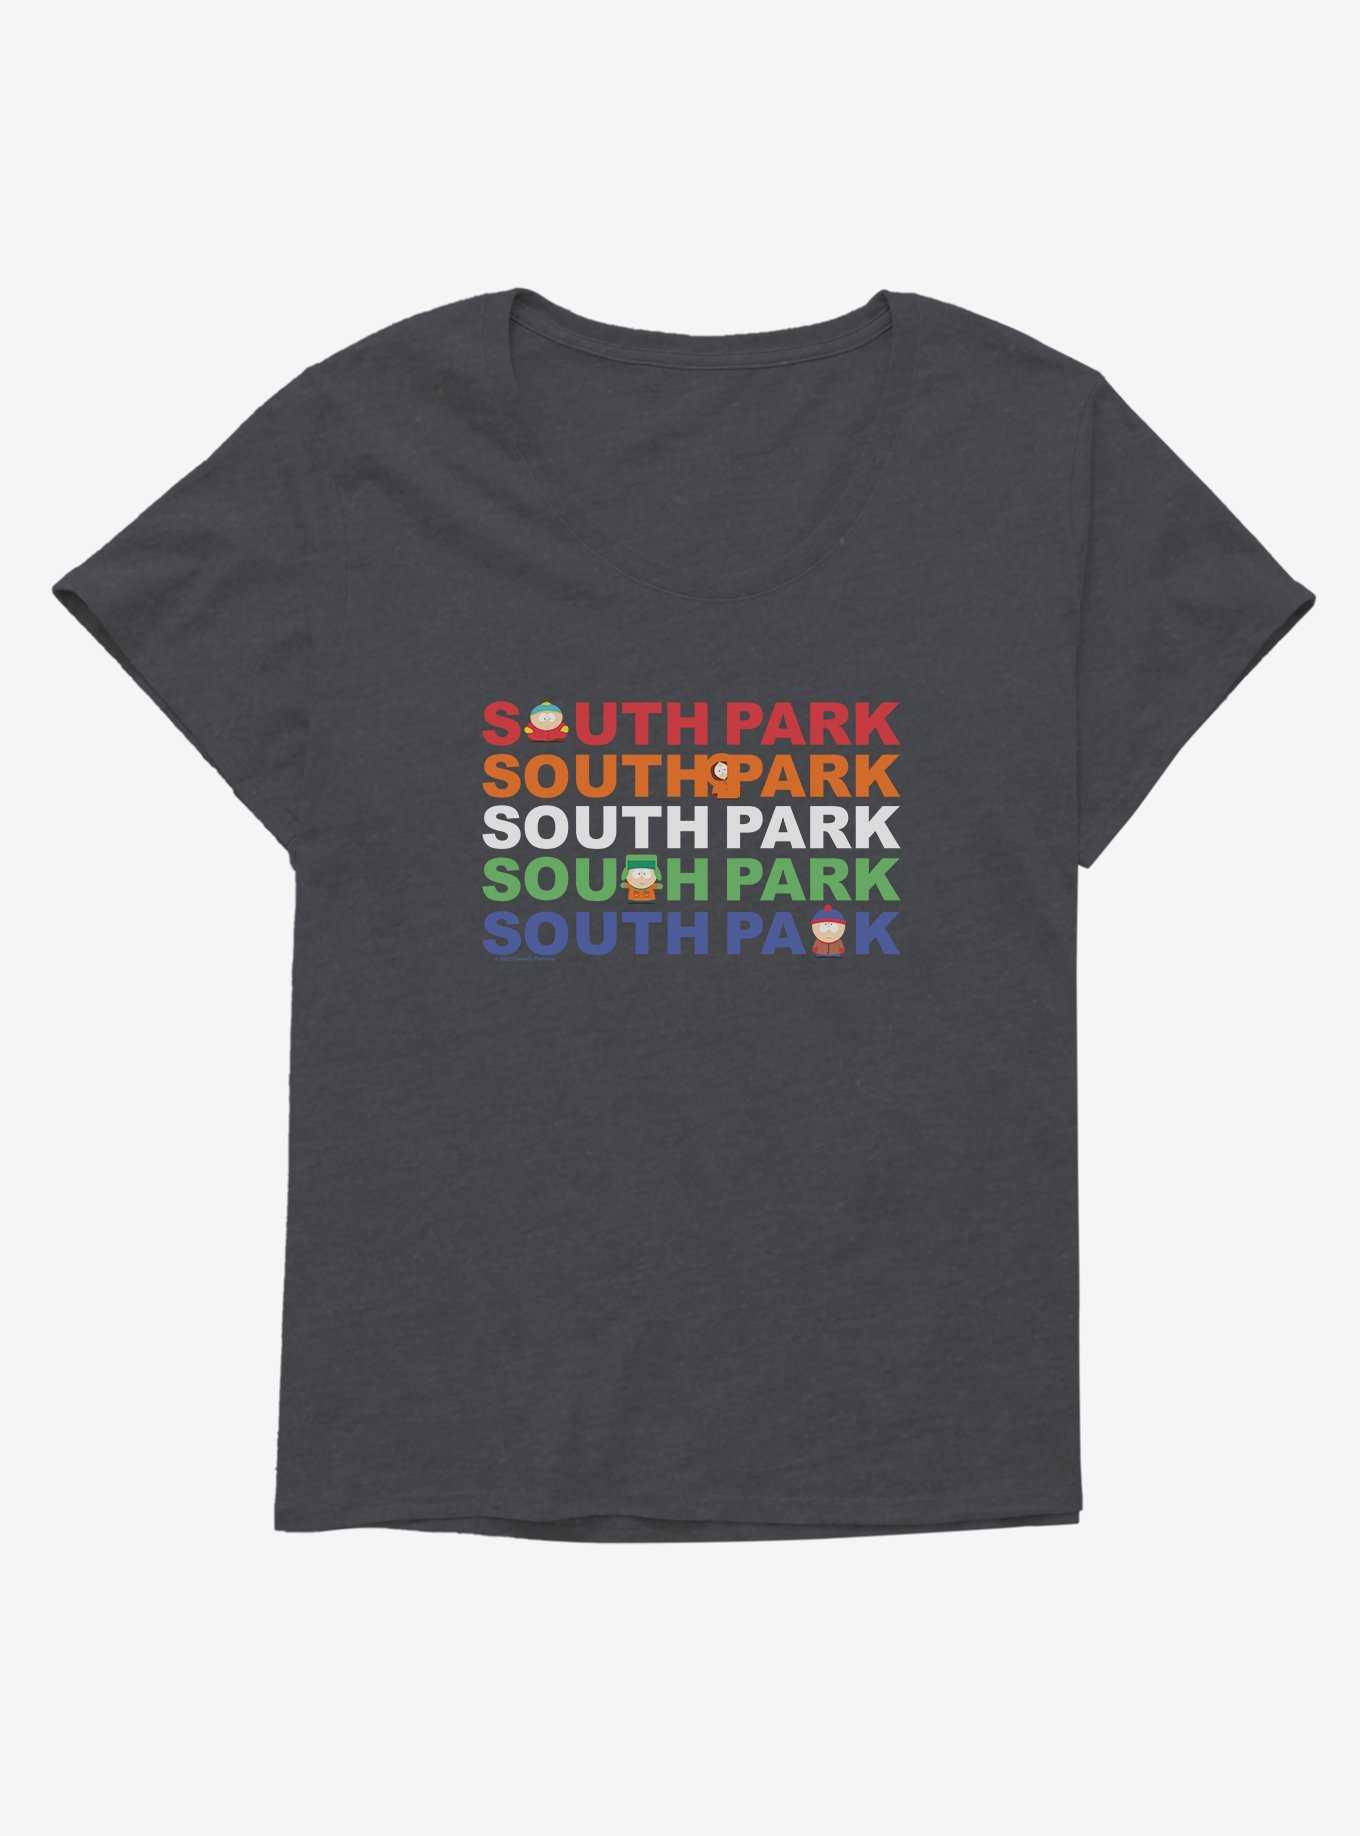 South Park Title by Title Girls T-Shirt Plus Size, , hi-res